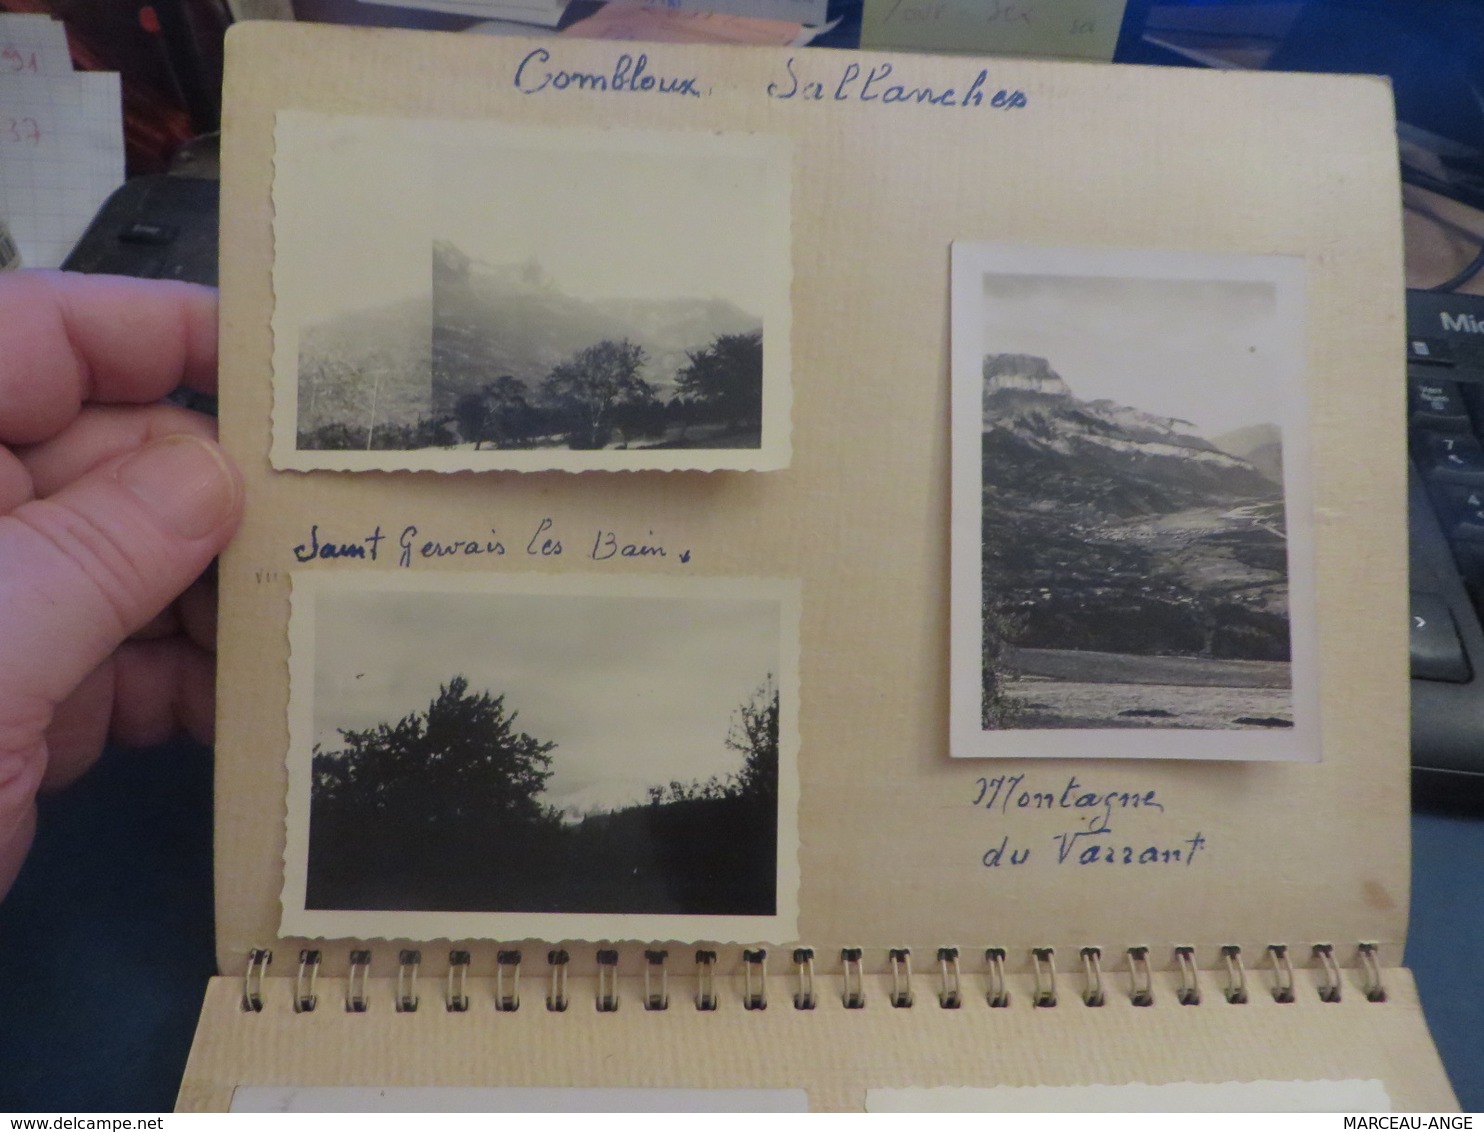 COMBLOUX et divers cartes dans un cahier collées par un coté NOMBREUSES PHOTOS